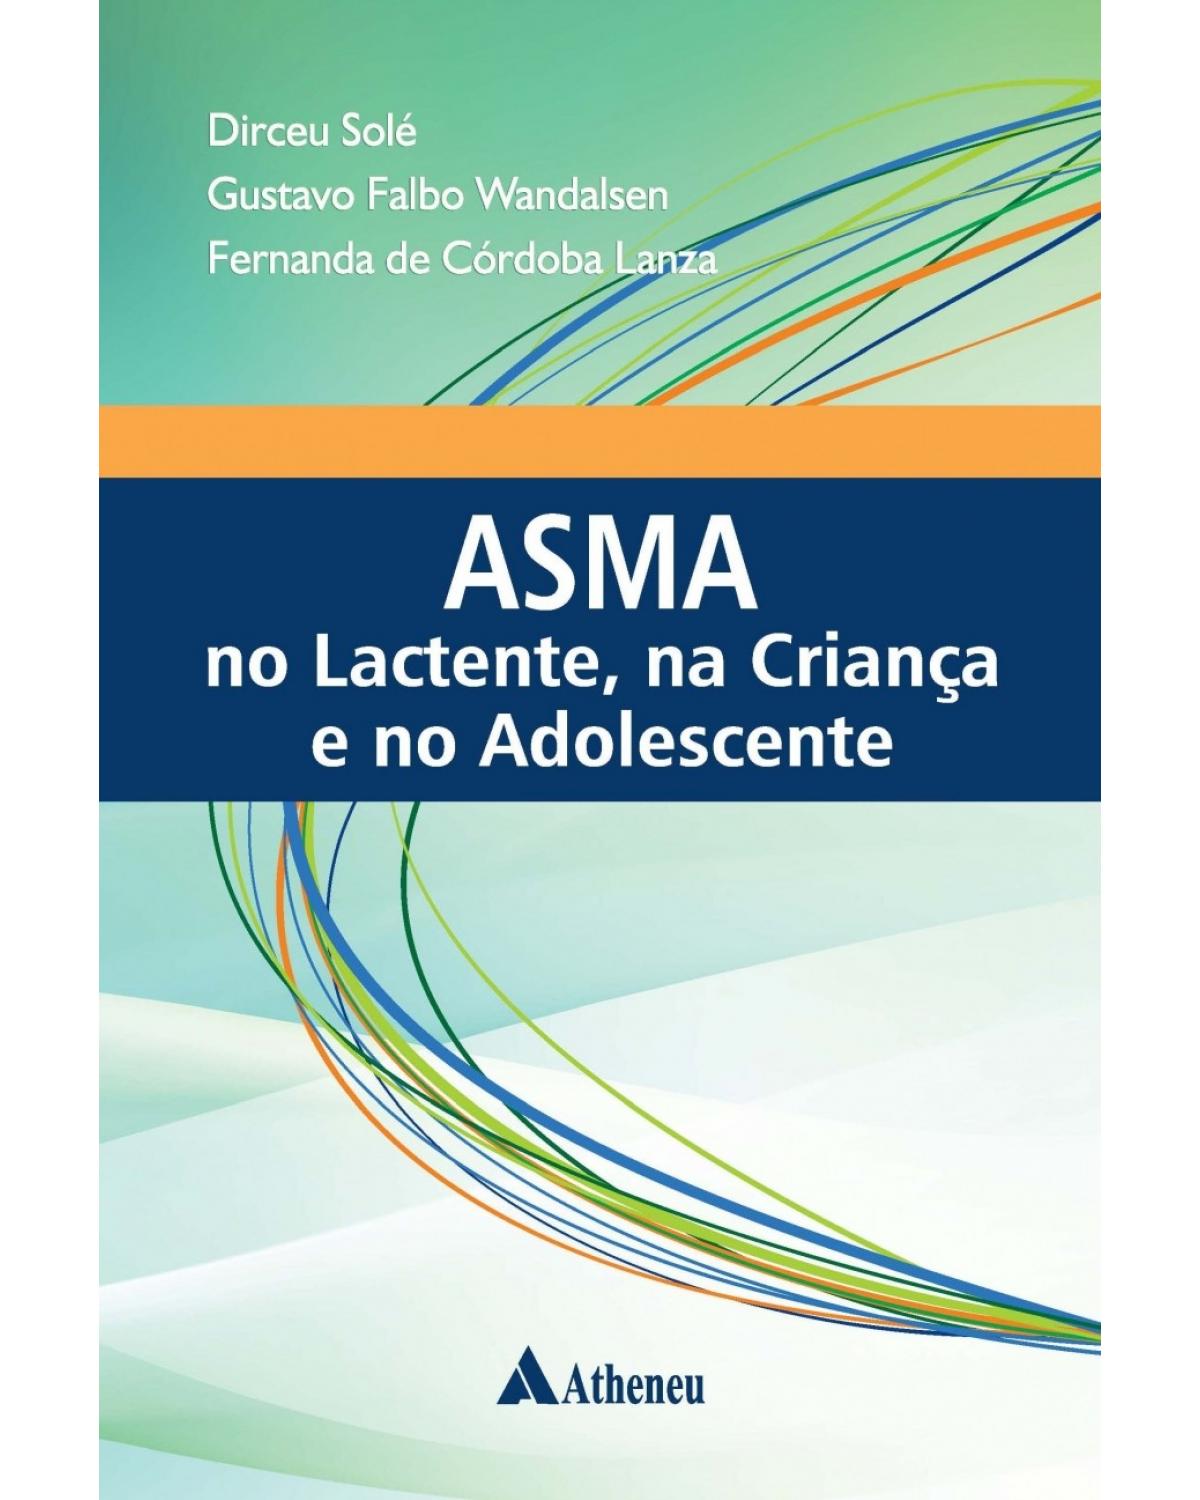 Asma no lactente, na criança e no adolescente: Departamento de Pediatria da Escola Paulista de Medicina - EPM/UNIFESP - 1ª Edição | 2016